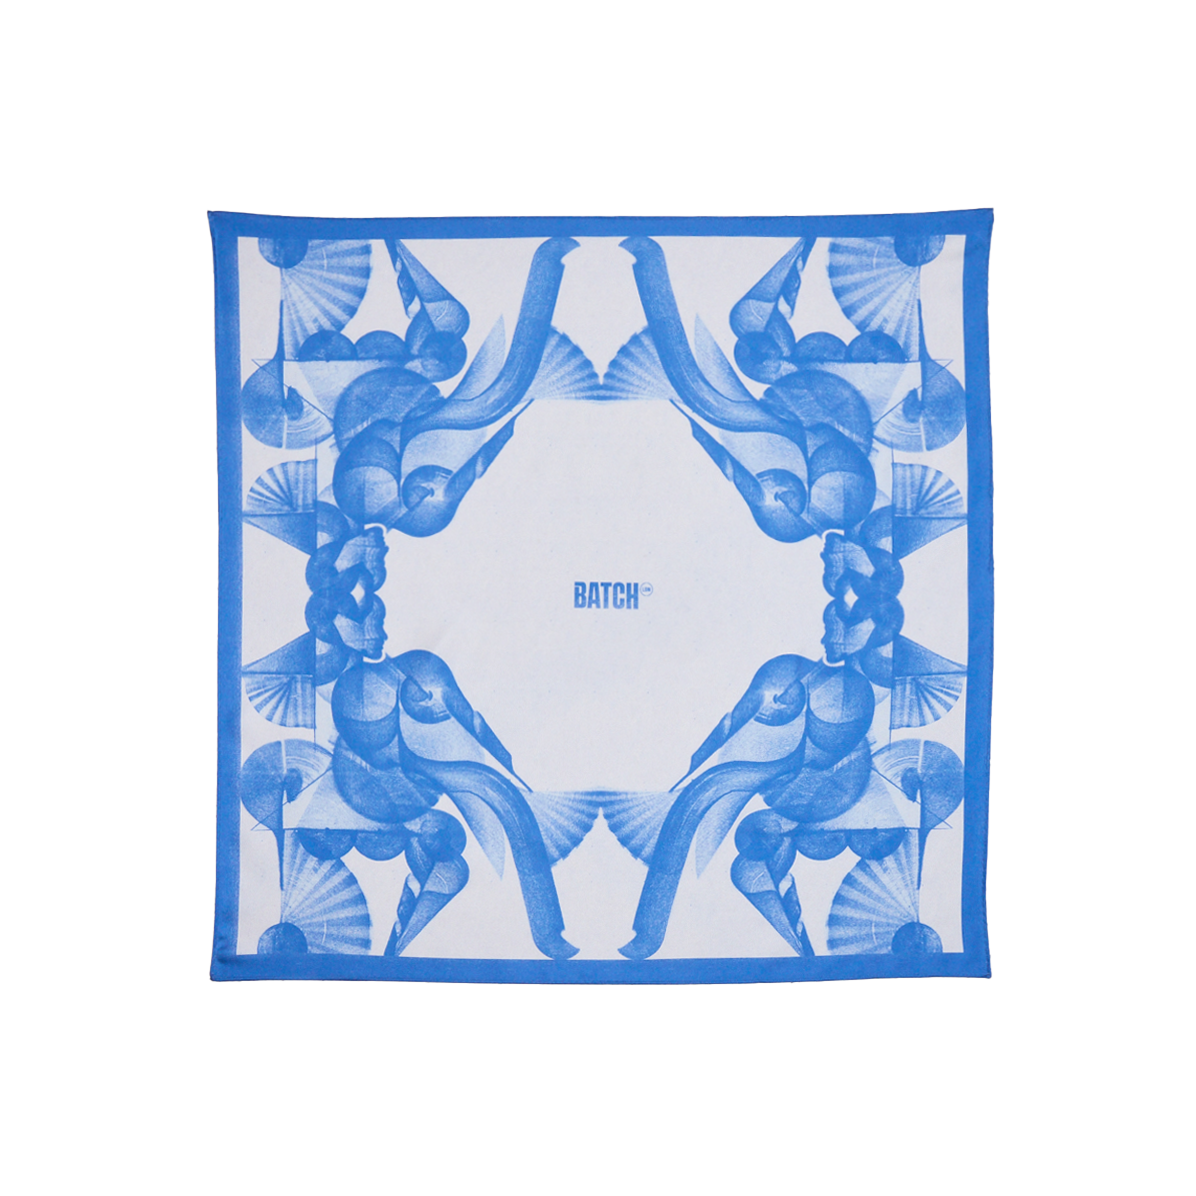 Batch Silk Scarf - Blue Fans